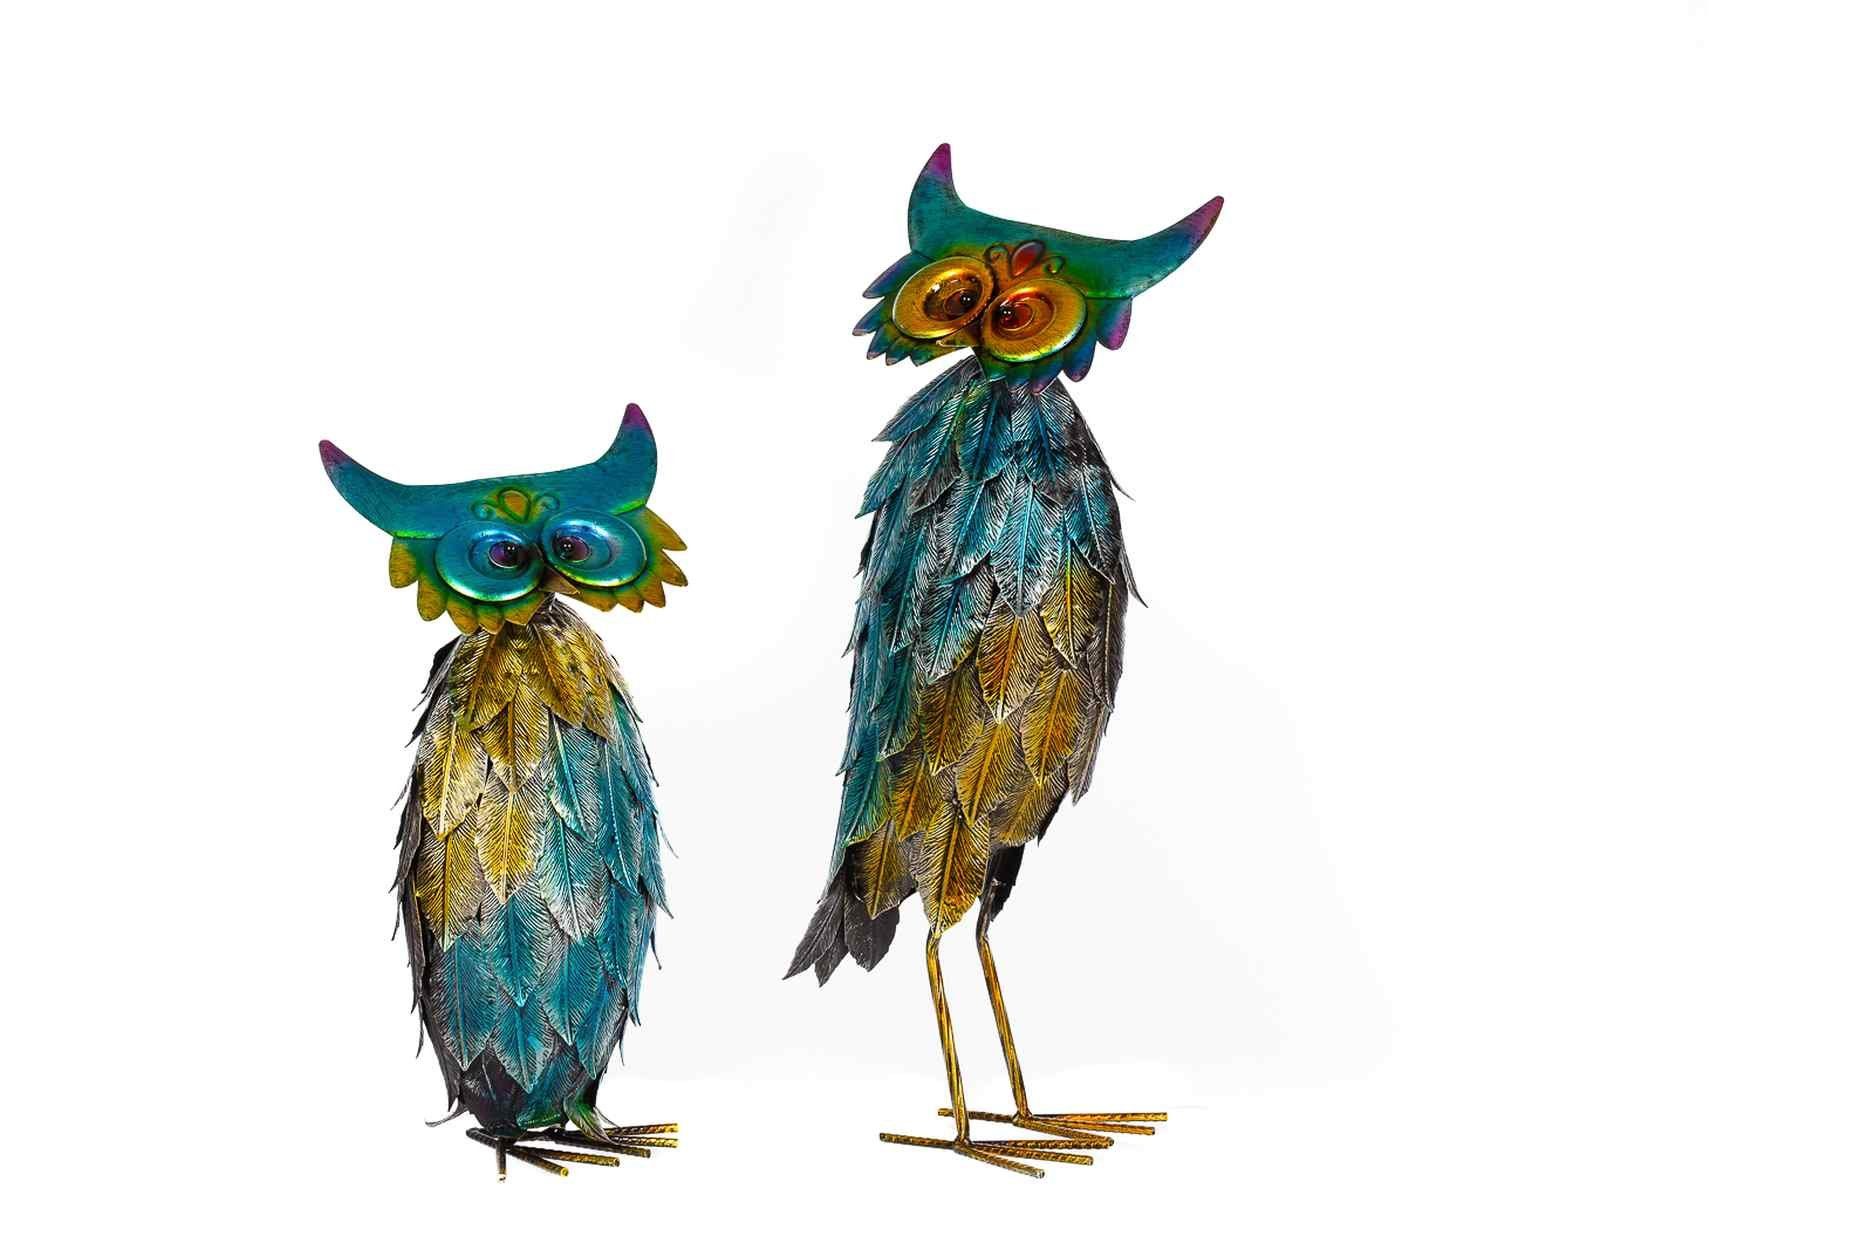 BIRENDY Dekofigur Riesiges schönes Metall Figurenpaar Eulen oder Enten WG Gartenfigur Dekofigur